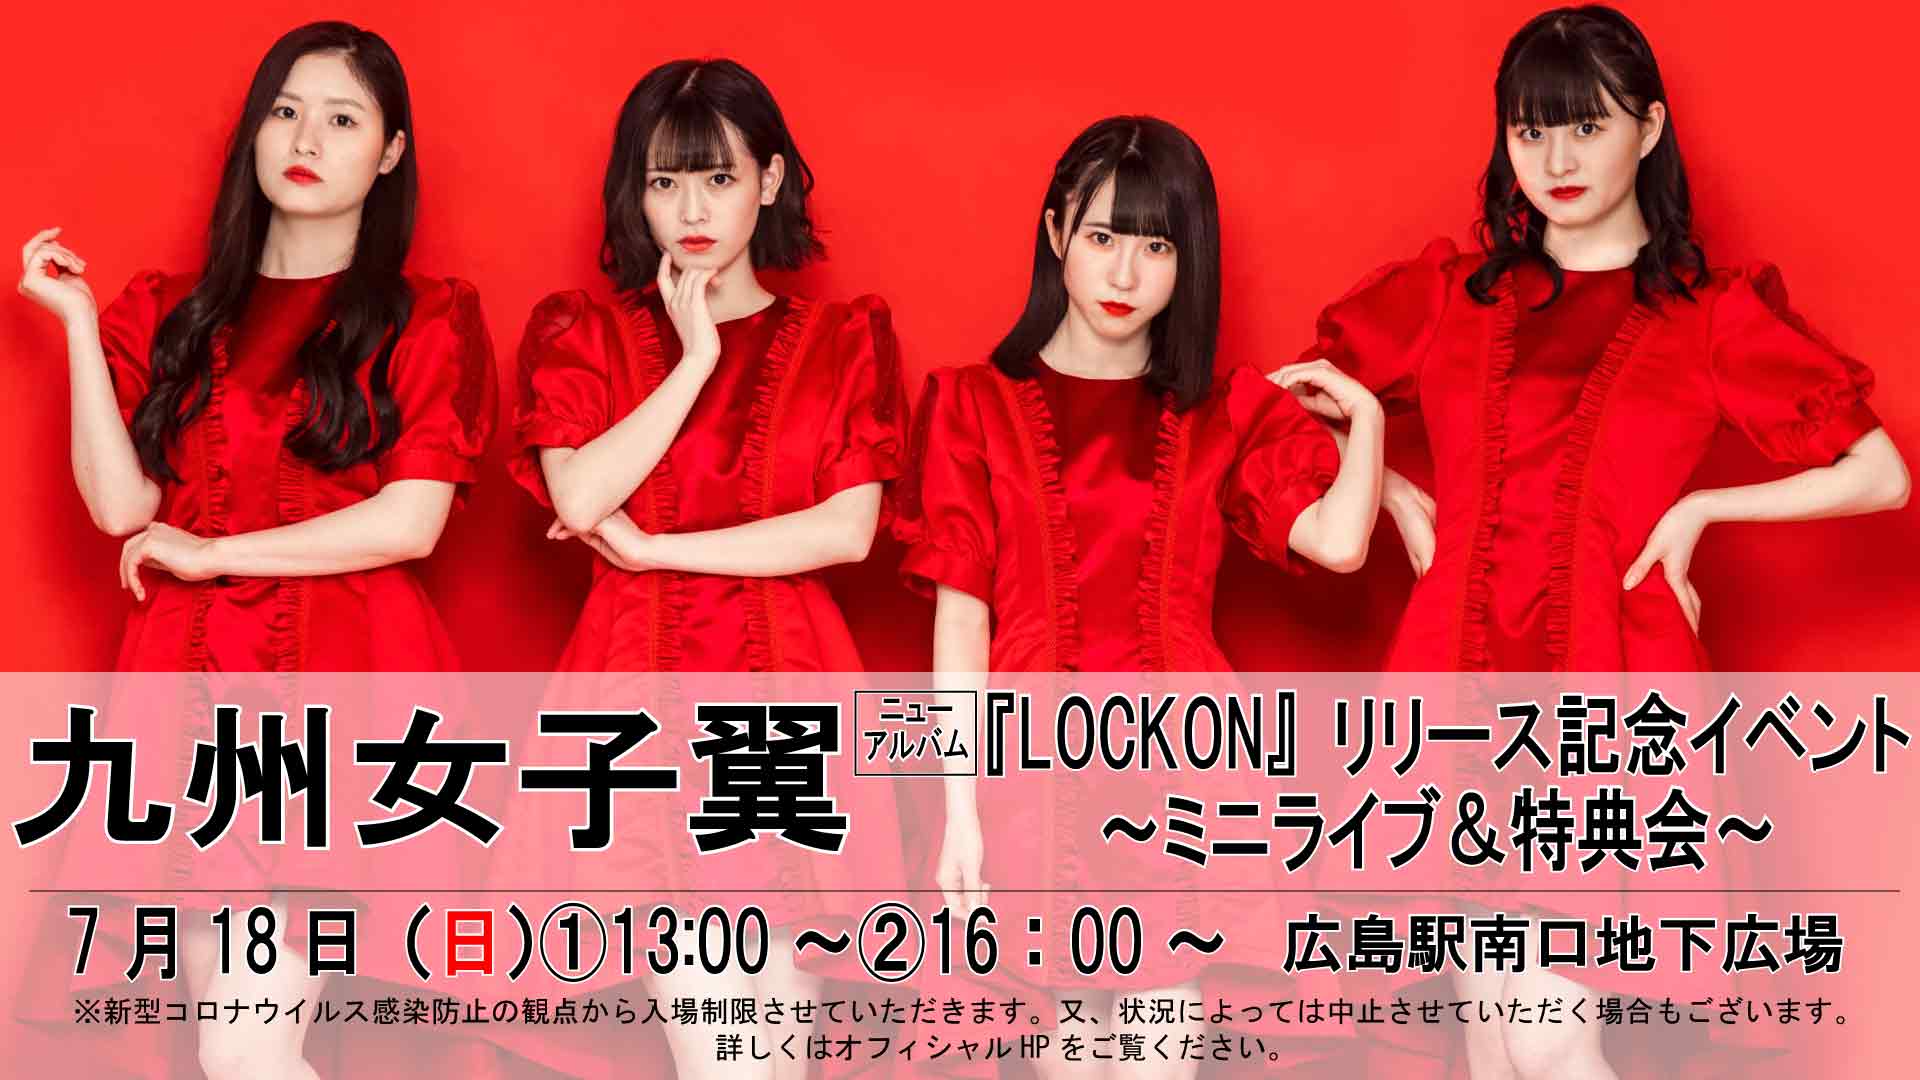 7/18(日)【九州女子翼】ニューアルバム『LOCKON』リリース記念イベント